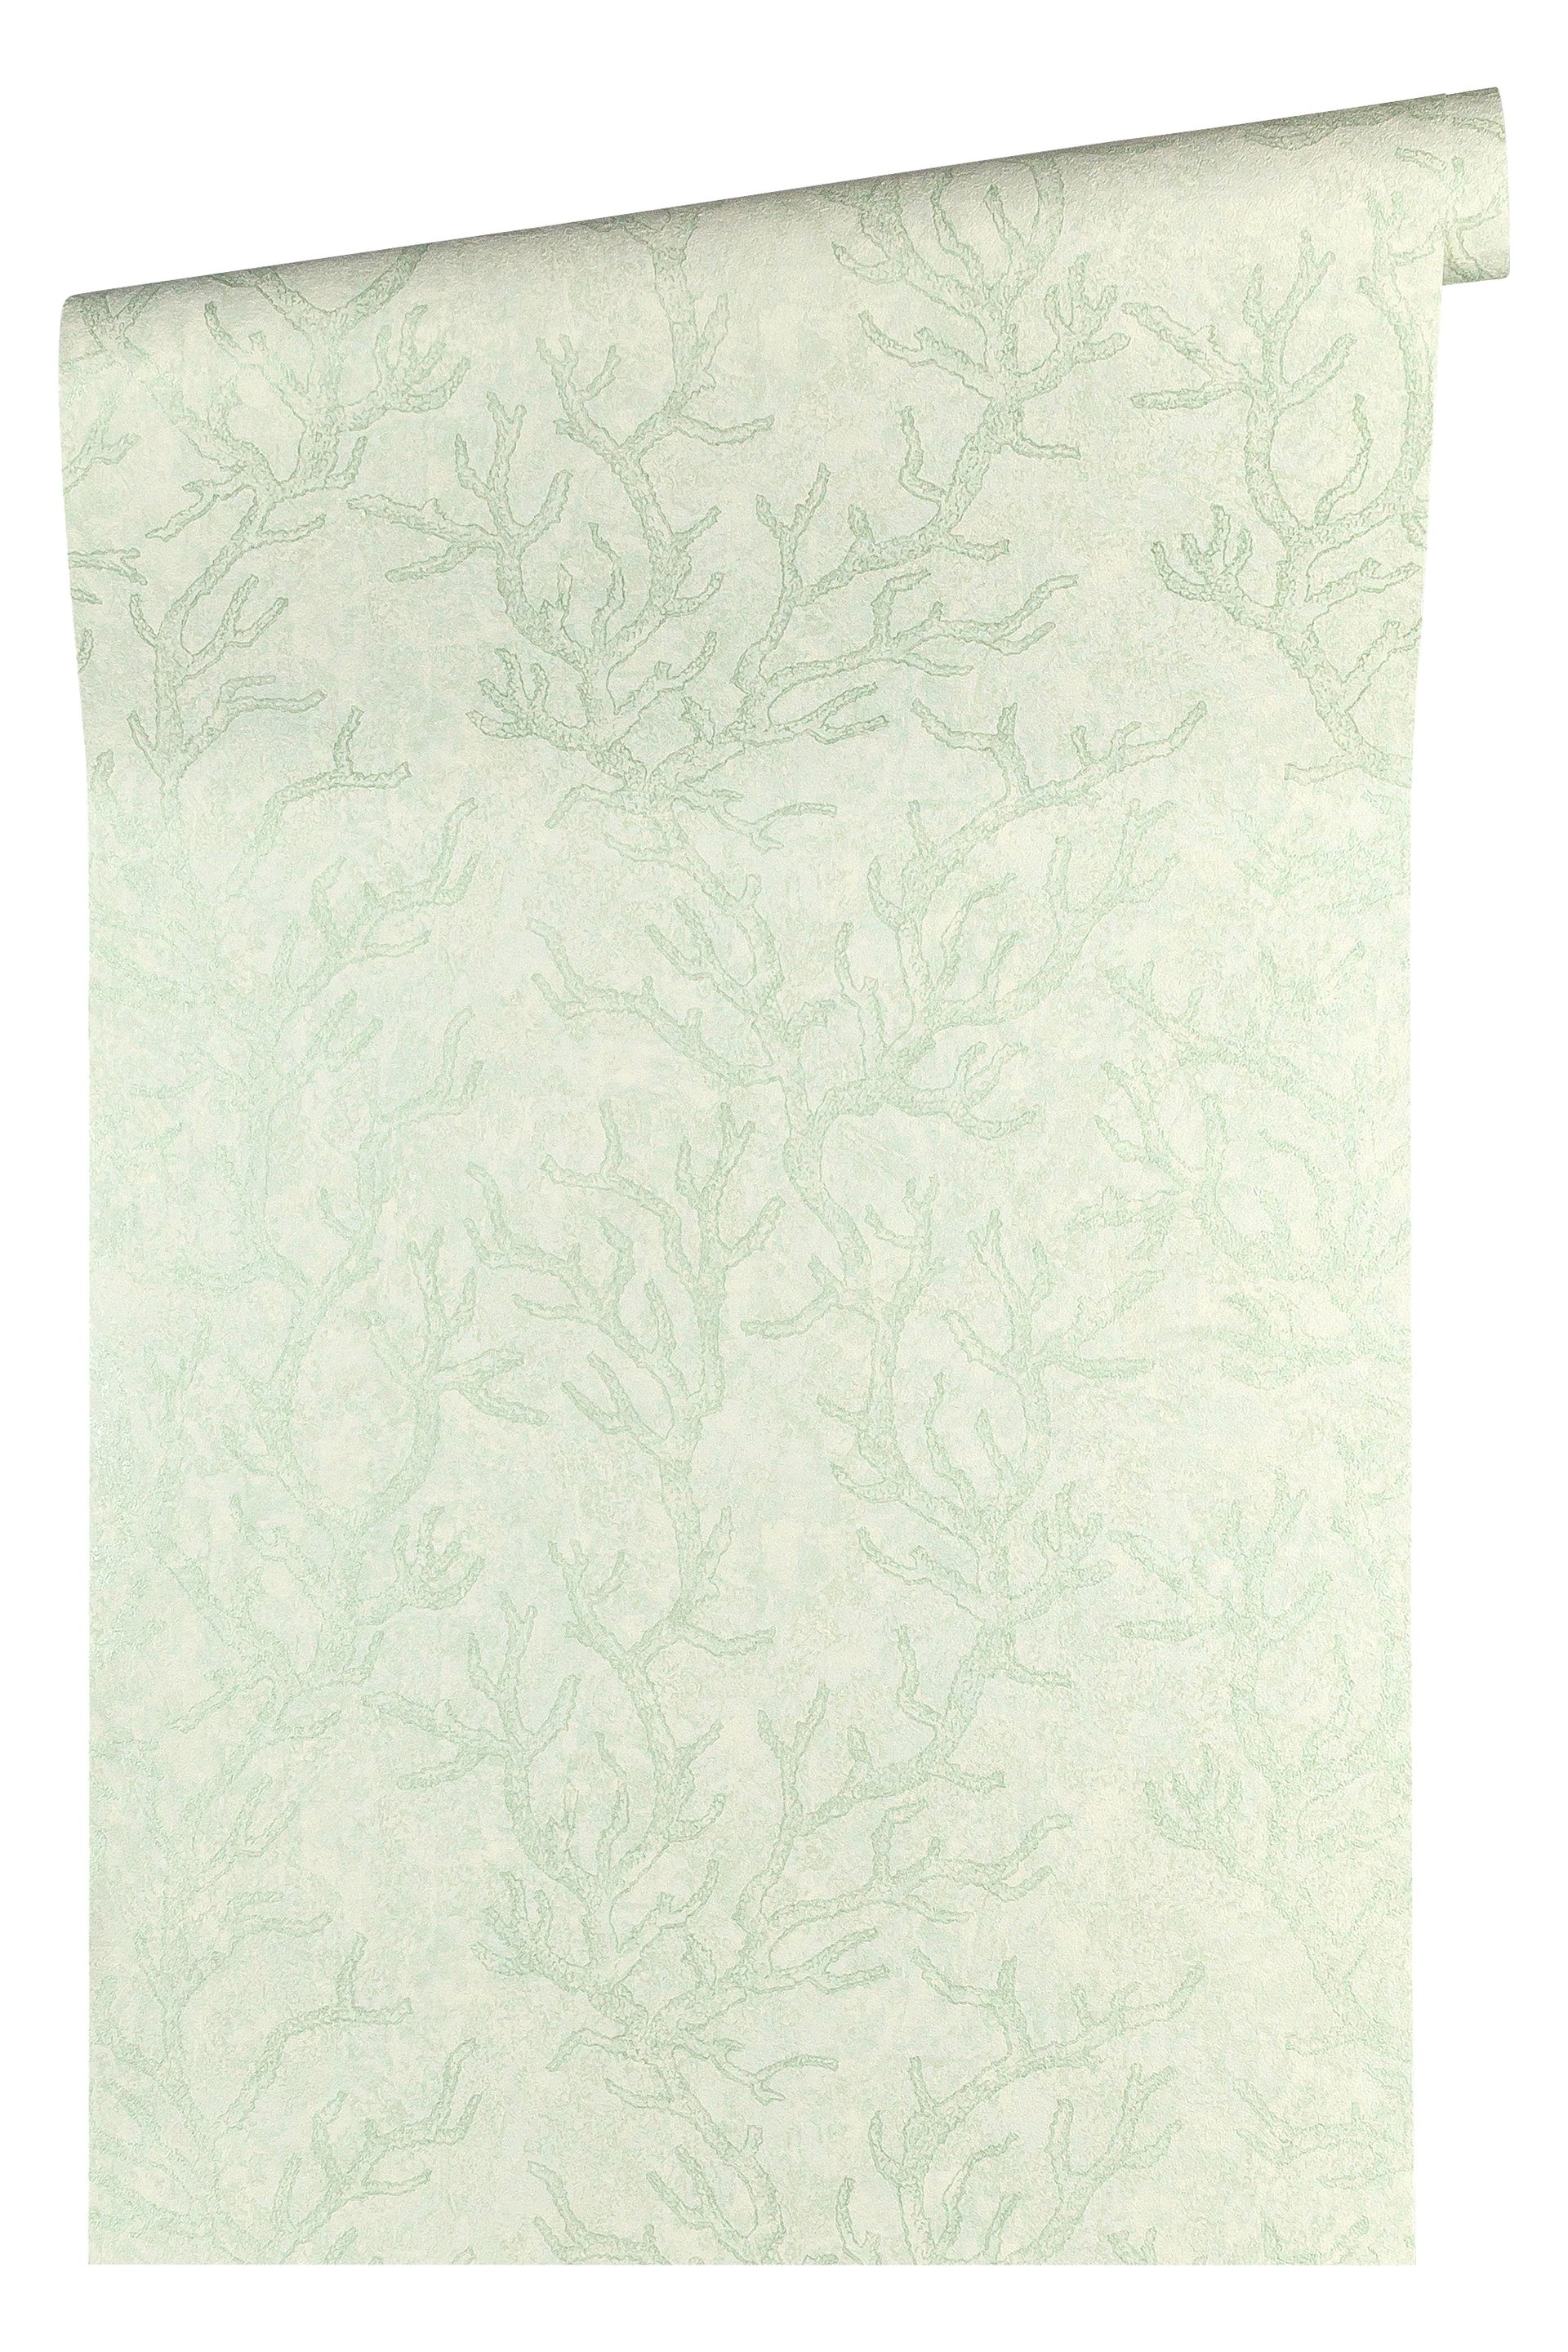 Versace wallpaper Versace 3, Design Tapete, grün, silber 344973